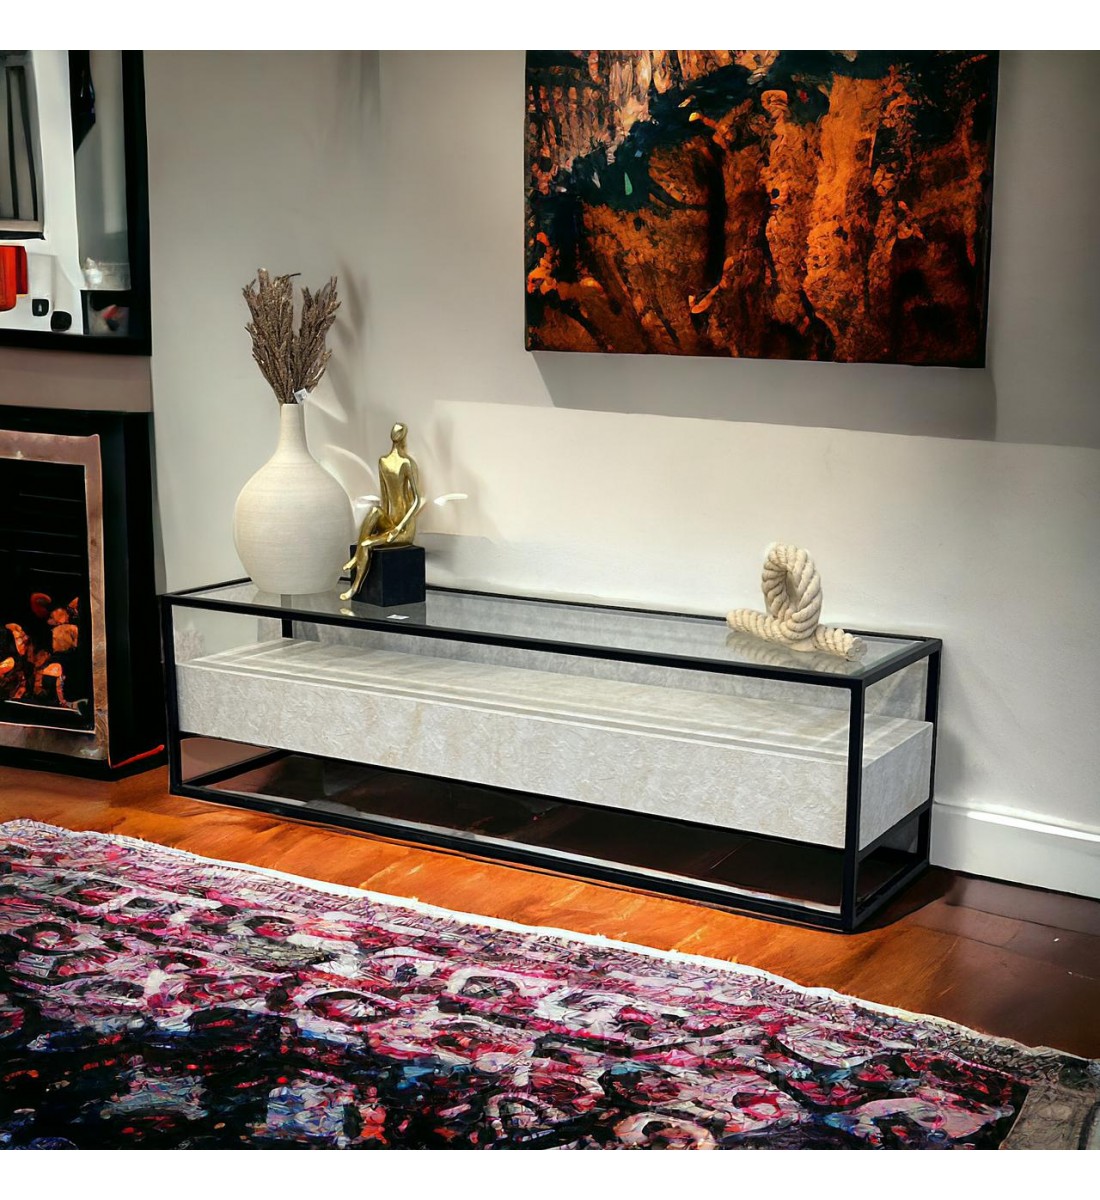   طاولة شاشة بلازما بديل الرخام سوبر دهان رخامي سطح زجاج لون بيج  40×160×45سم 